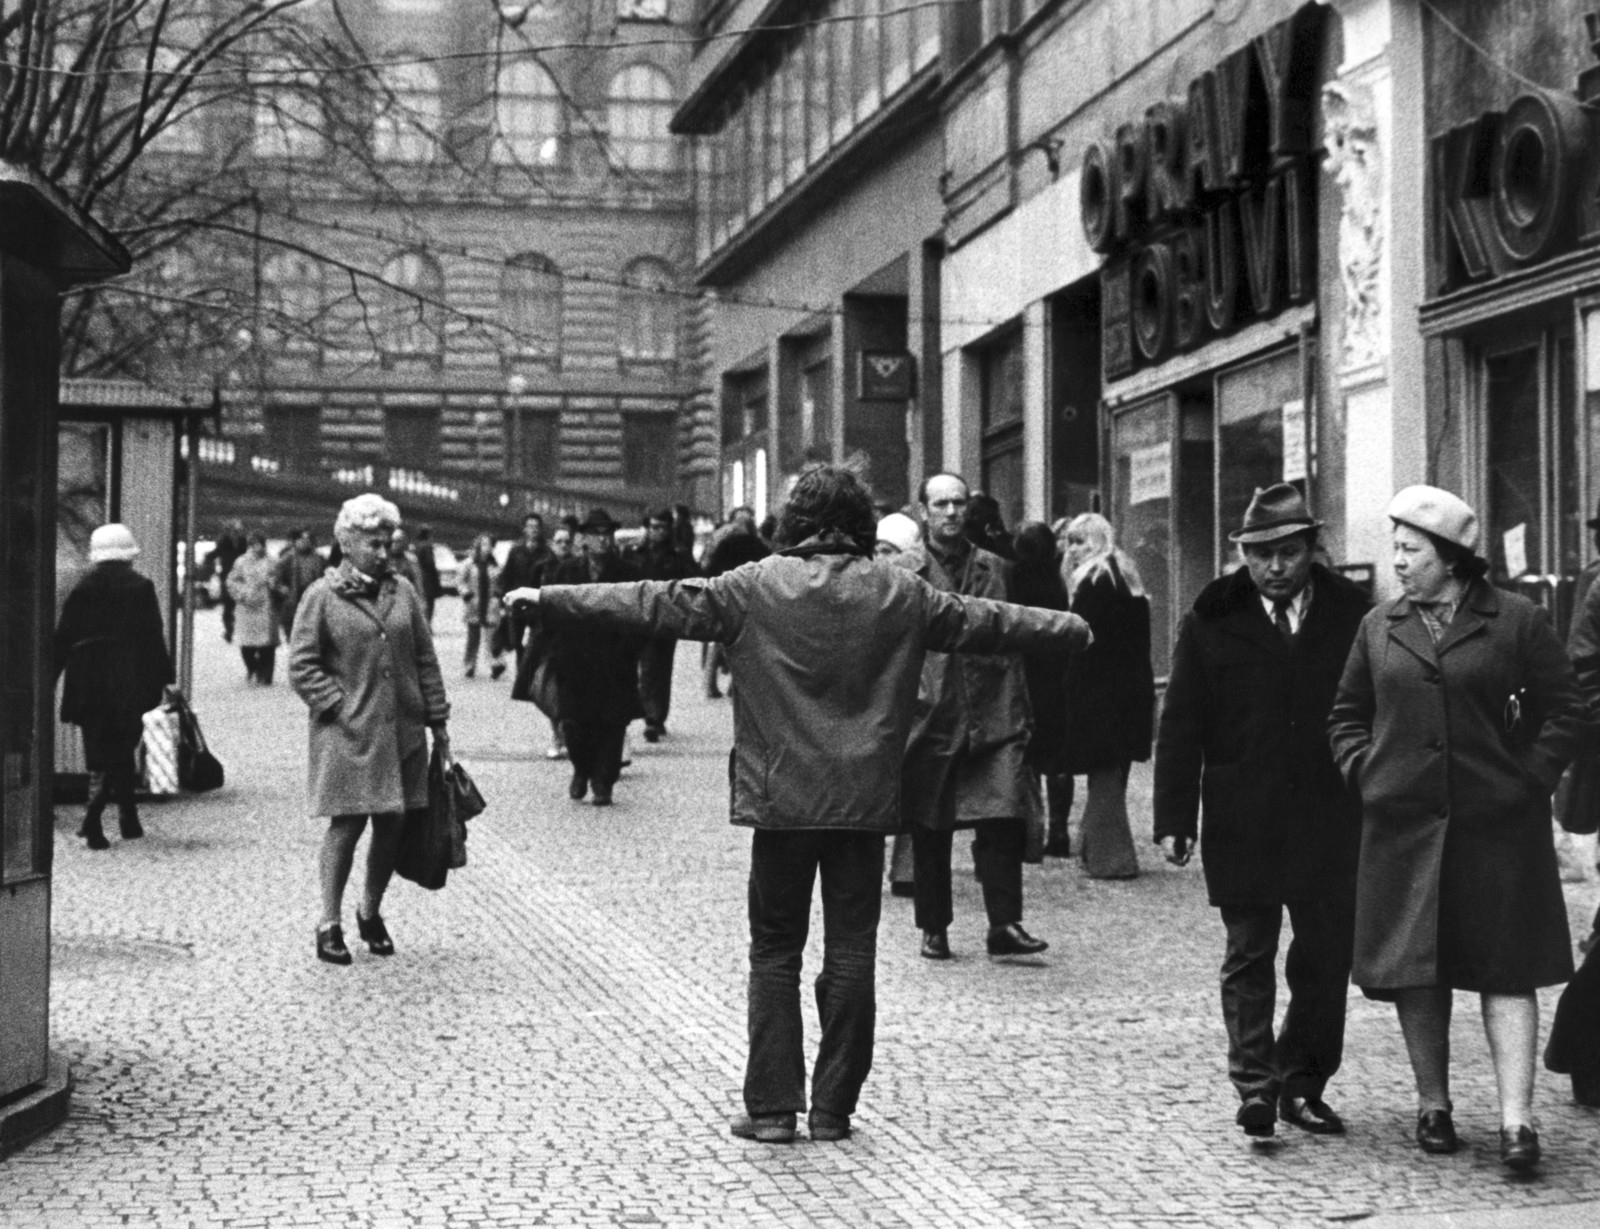 Иржи Кованда 19 ноября 1976, Прага Ч/б фотография Credits: gb agency, Париж, и Krobath, Вена/Берлин